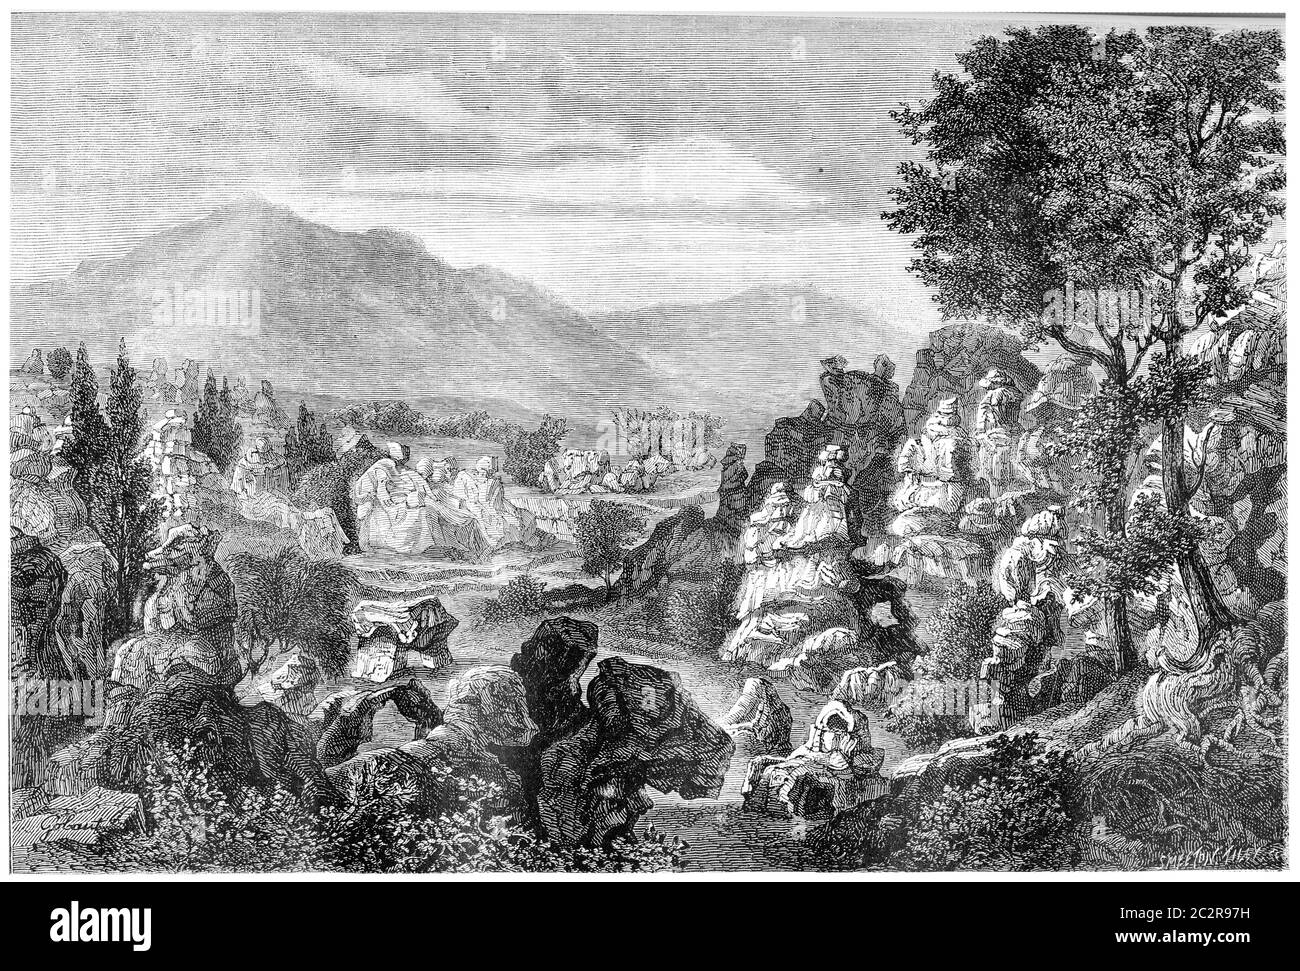 Formazioni rocciose calcaree del fiume Ardeche, regione di Ardeche, Francia, illustrazione d'epoca incisa. Magasin Pittoresque 1874. Foto Stock